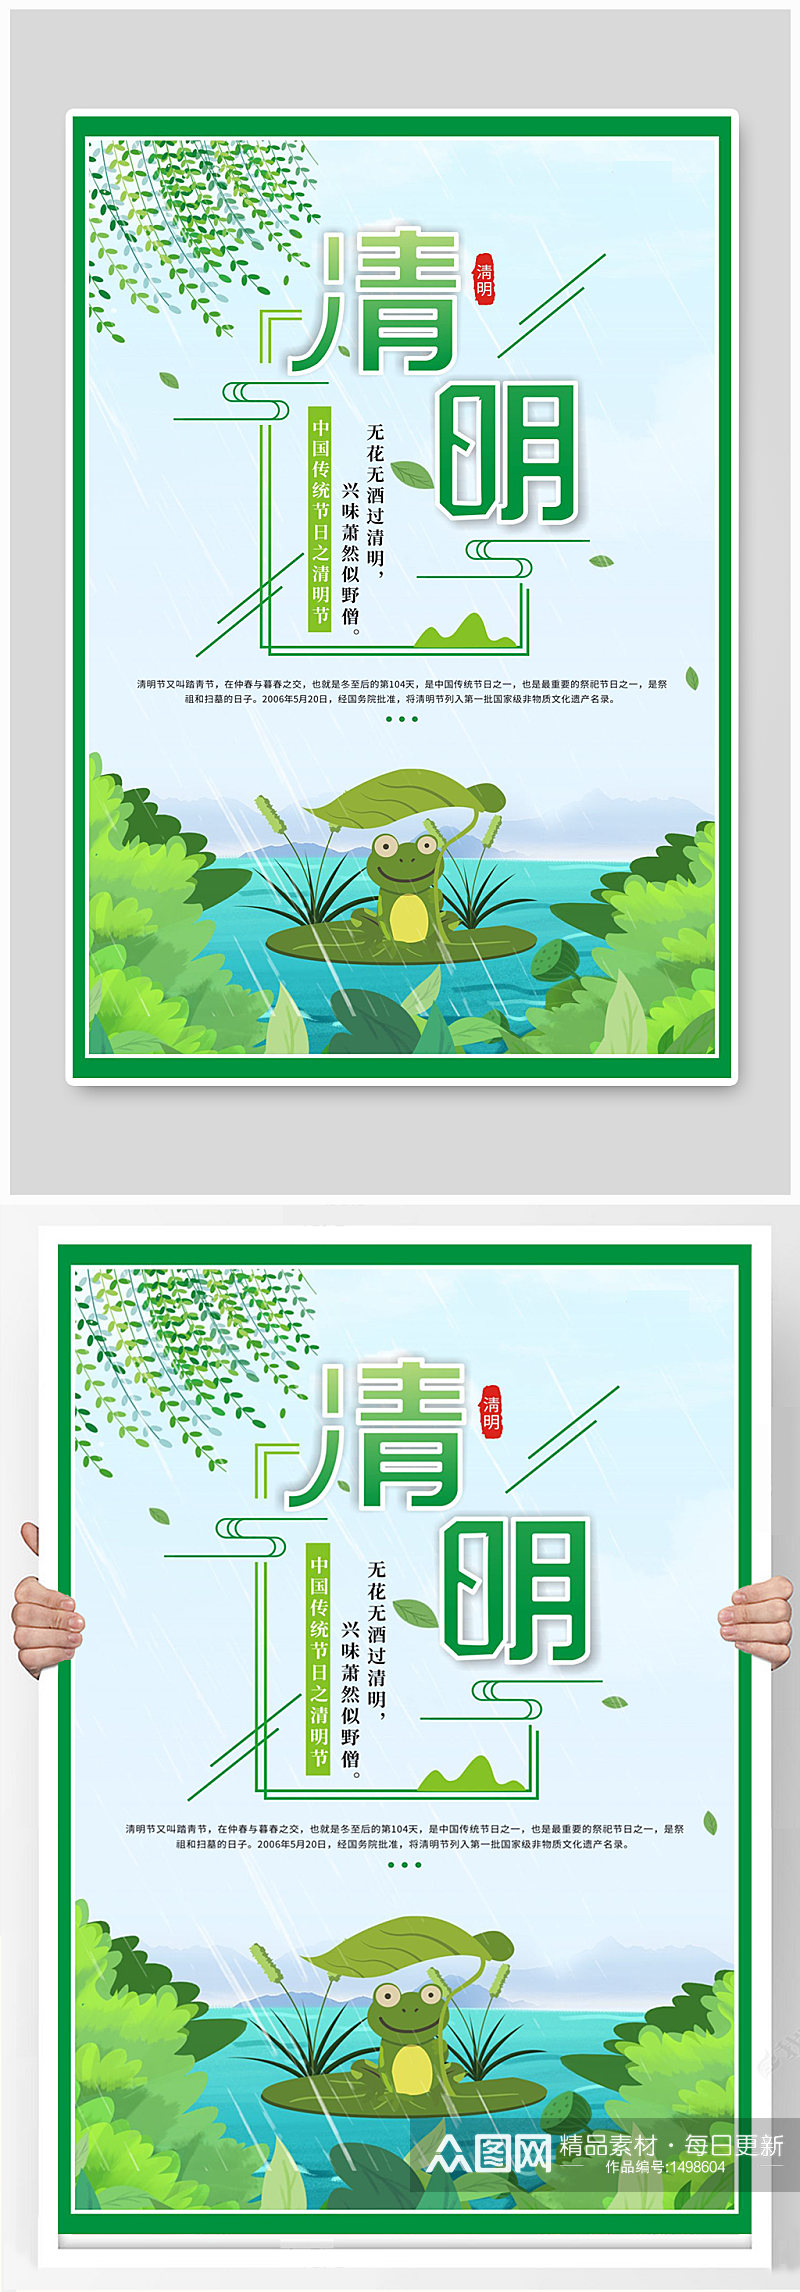 中国传统节日清明节绿色海报素材